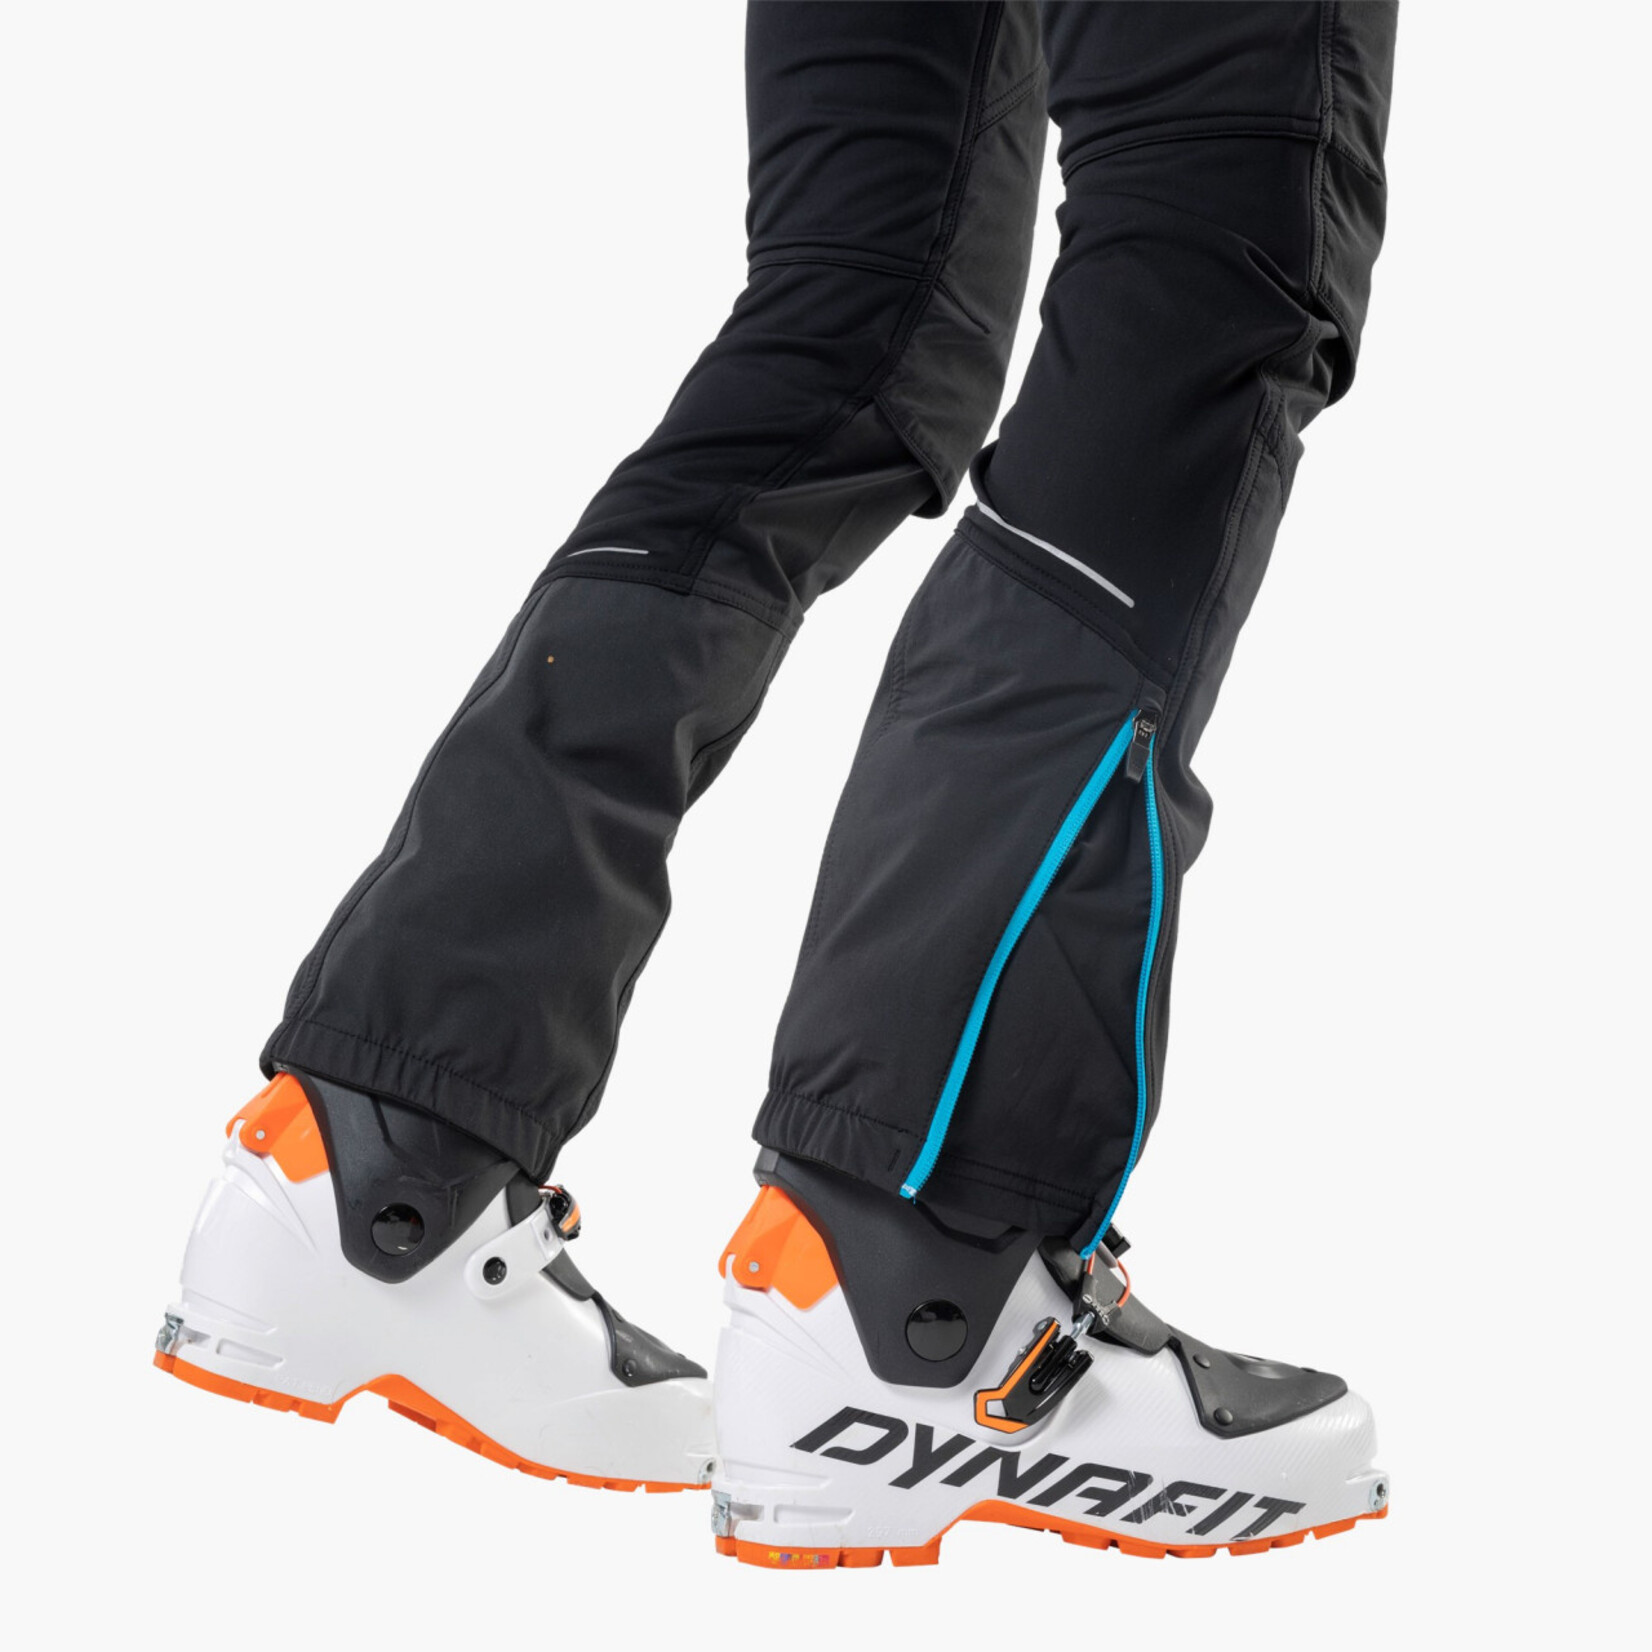 Dynafit Dynafit Speed Ski Touring Boots